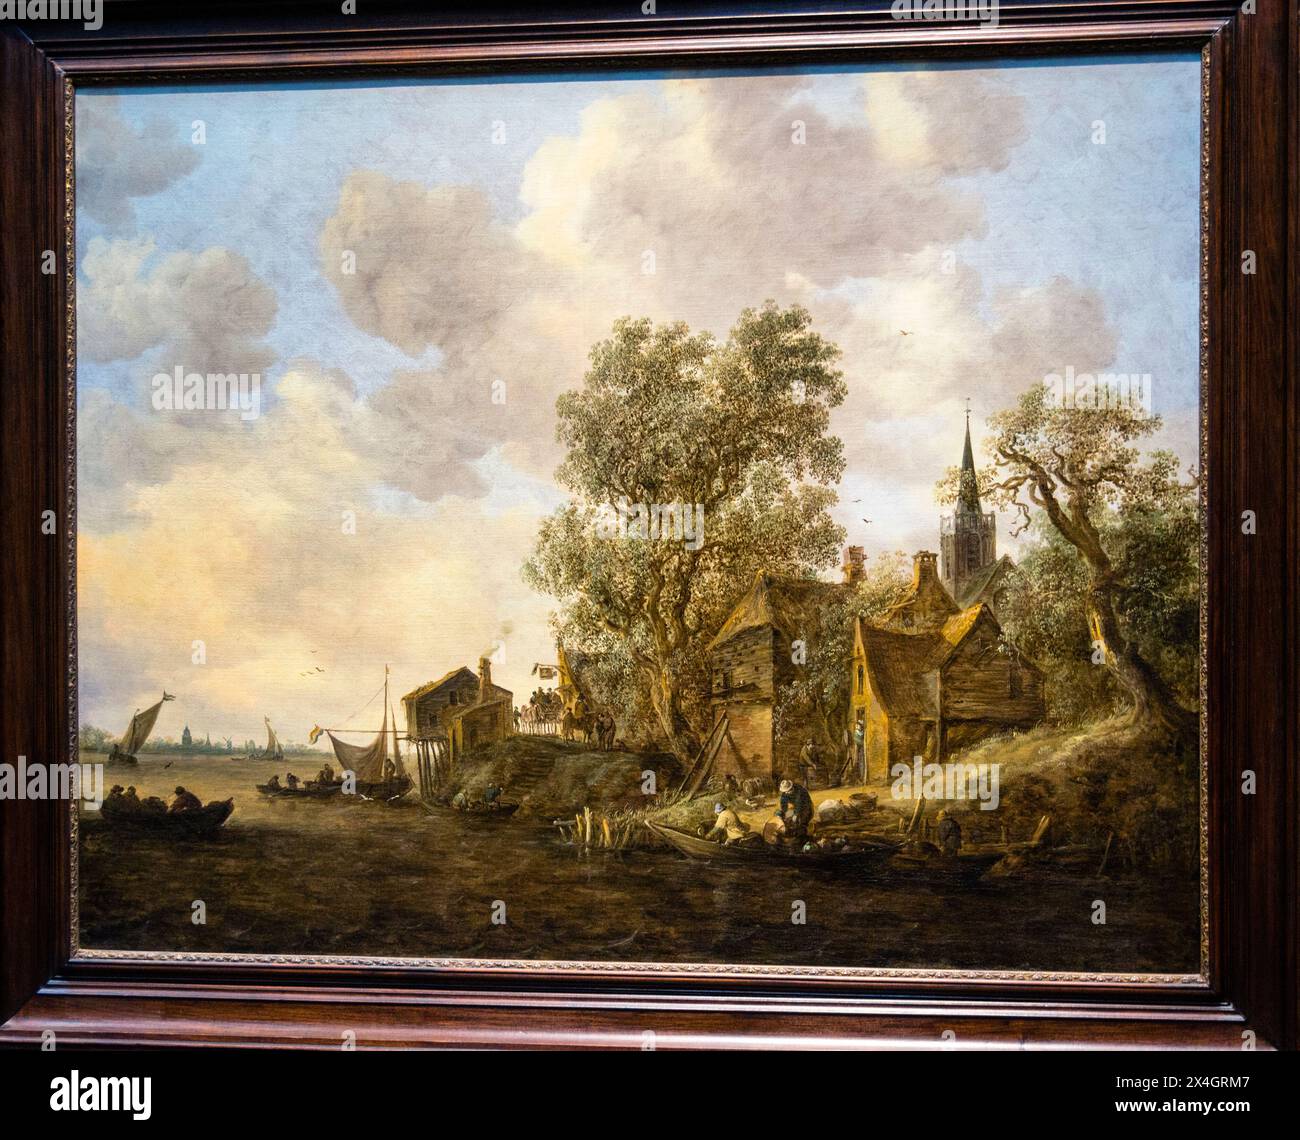 Vue d'une ville sur une rivière, Jan van Goyen, Rijksmuseum, Amsterdam, pays-Bas. Banque D'Images